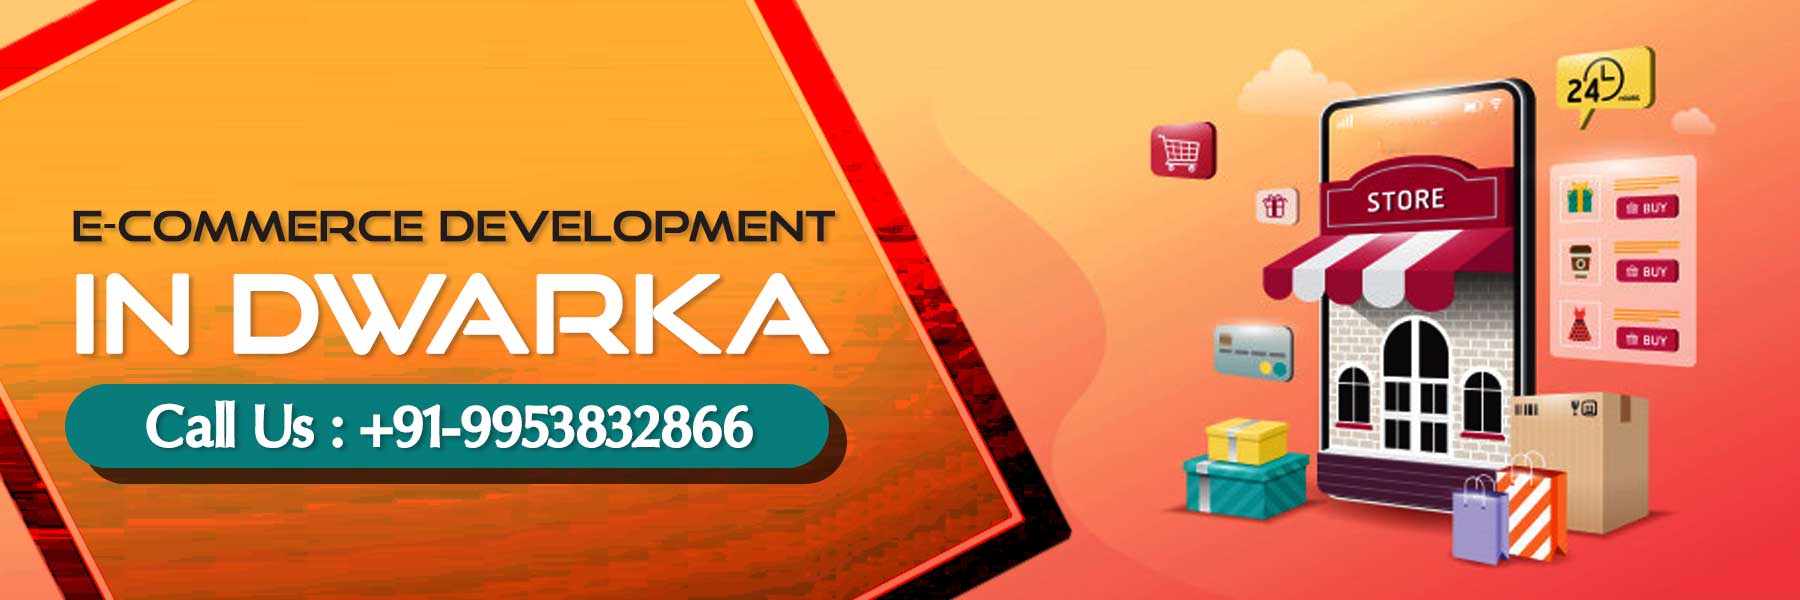 ecommerce development in Dwarka